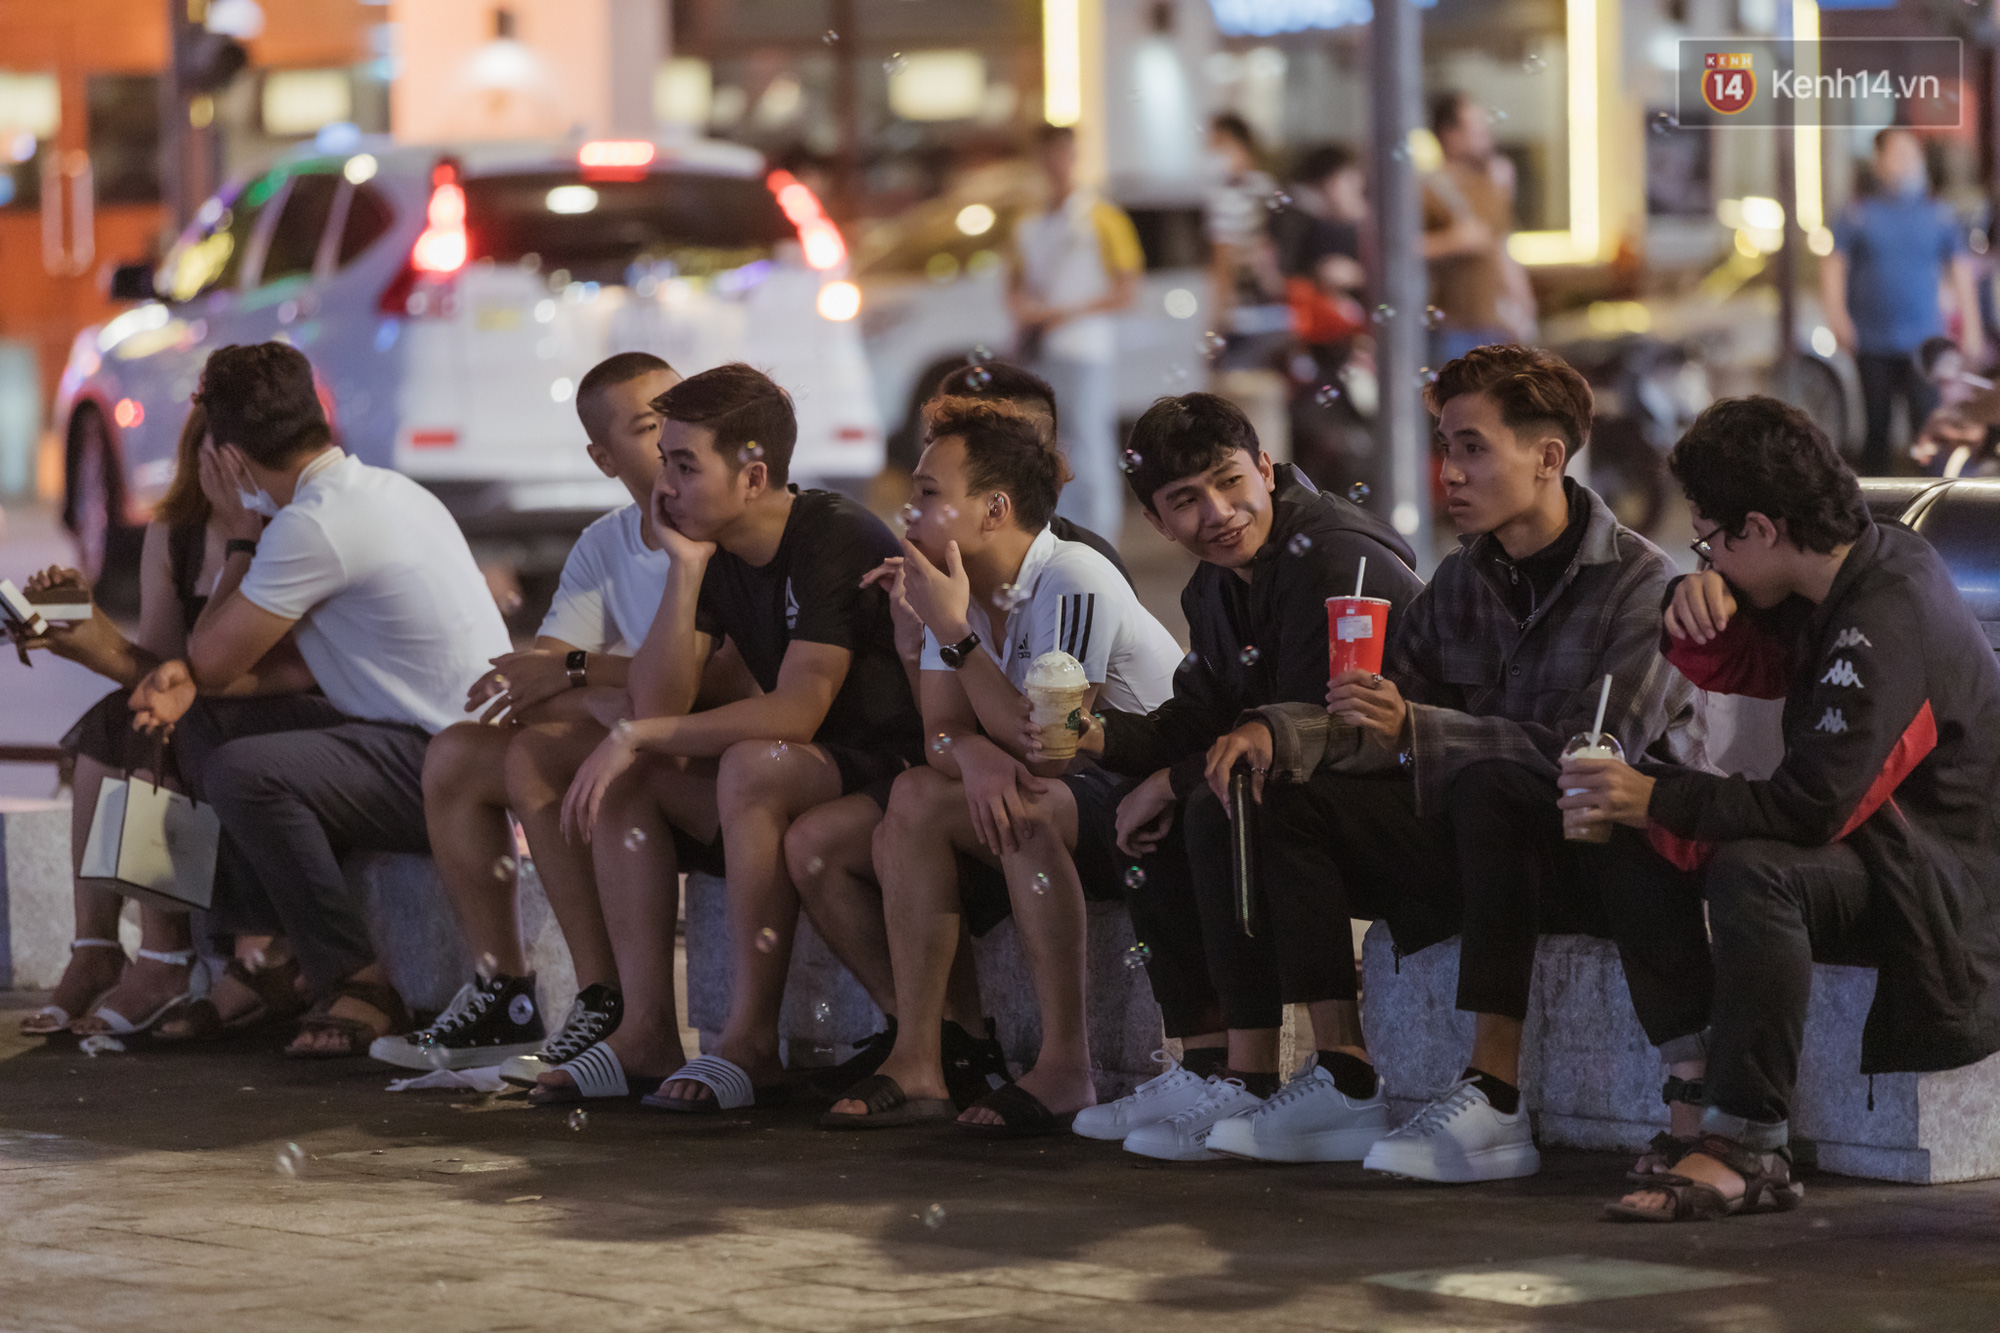 Chùm ảnh: Phố đi bộ Nguyễn Huệ vẫn đông kín người giữa những ngày tâm điểm dịch virus corona, một số người phớt lờ việc đeo khẩu trang phòng bệnh - Ảnh 19.